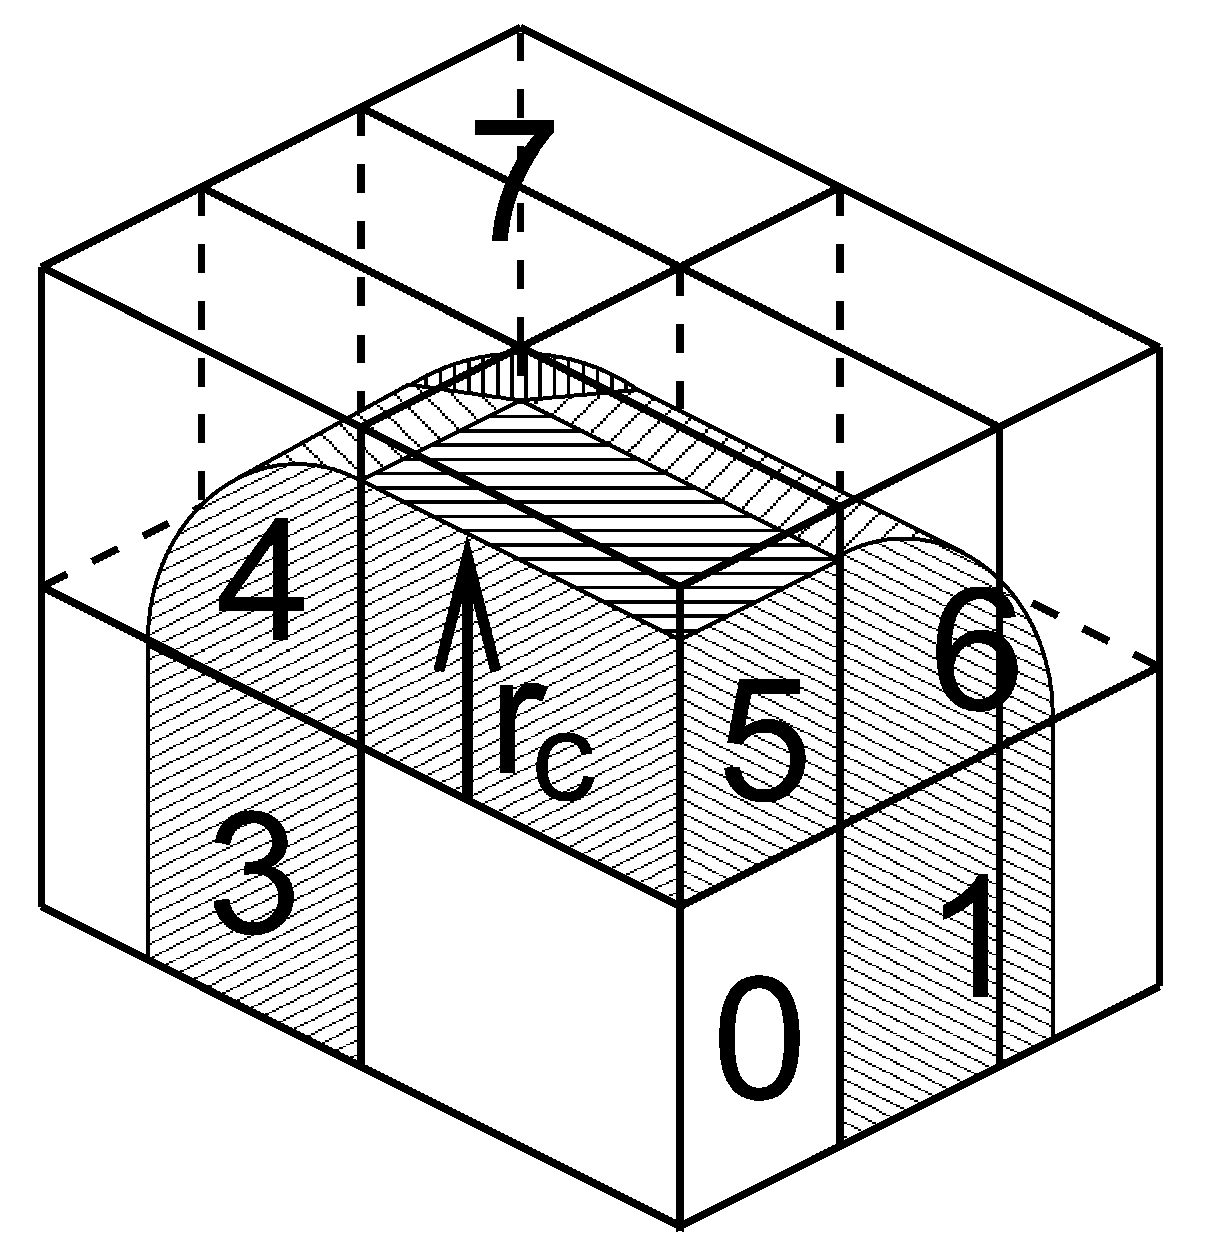 图3.12: $3\times2\times2$ 晶胞无交错的区域分解格点. 区域1到7中的坐标被通讯到区域0中拥有自己粒子的边角晶胞. $r_c$ 为截断半径.